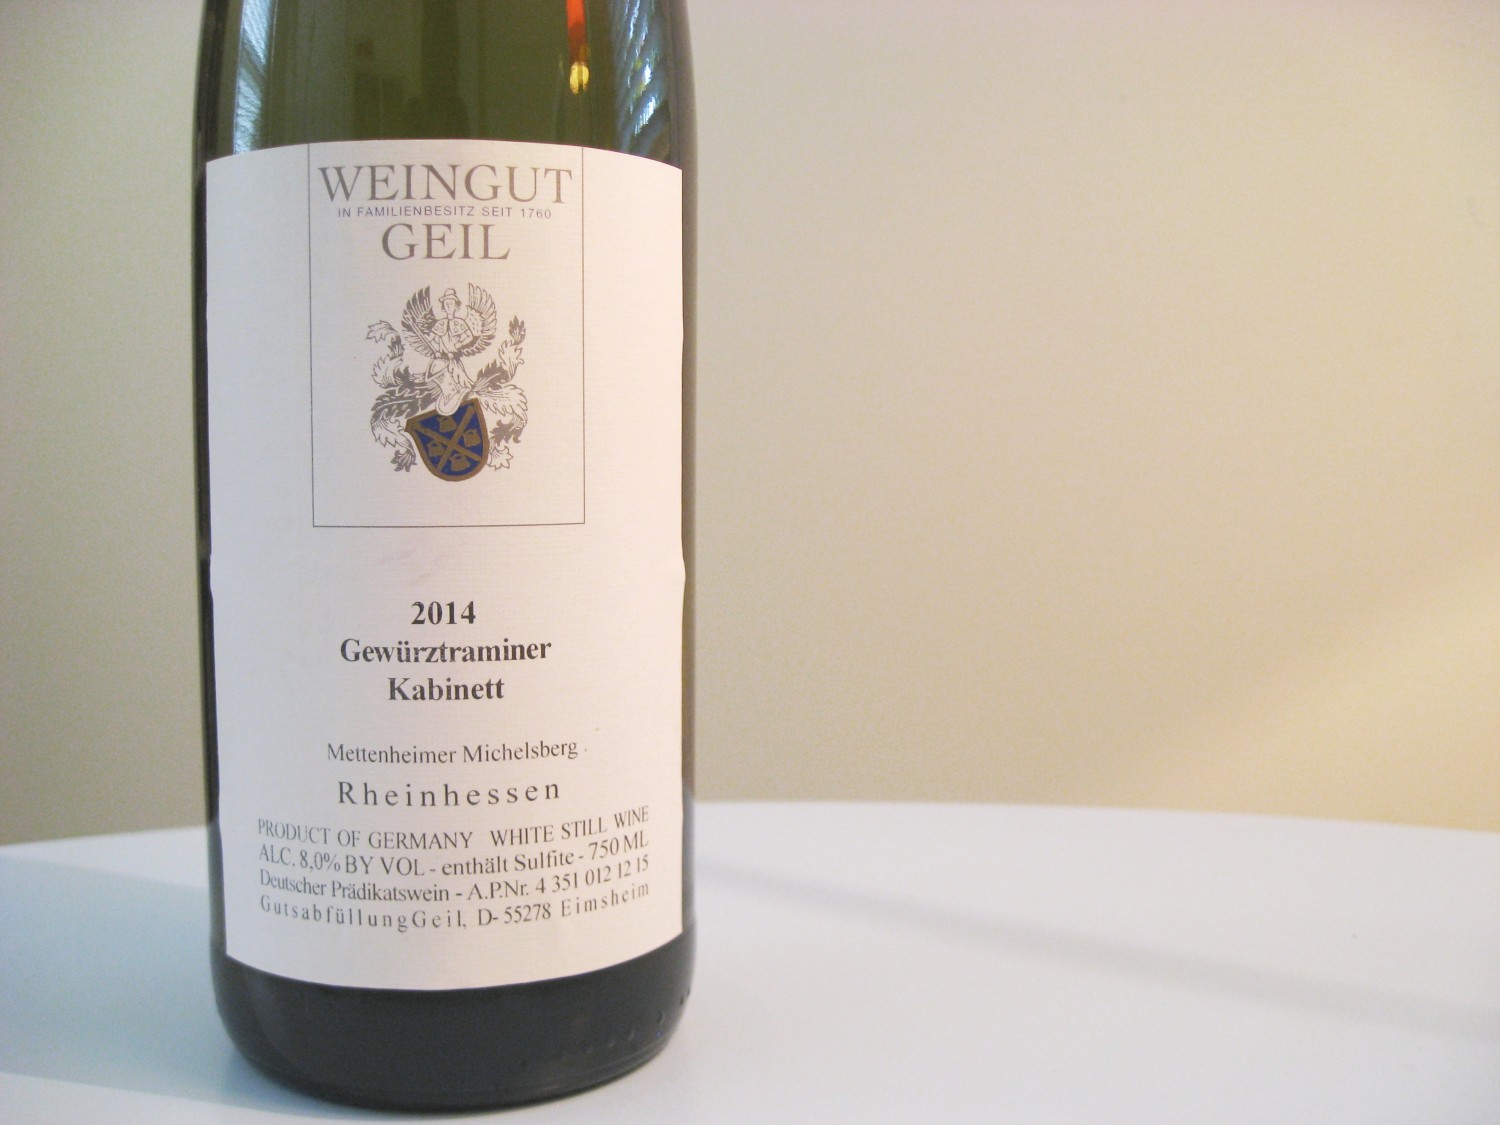 Weingut Geil, Gewürztraminer Kabinett 2014, Mettenheimer Michelberg, Rheinhessen, Germany, Wine Casual